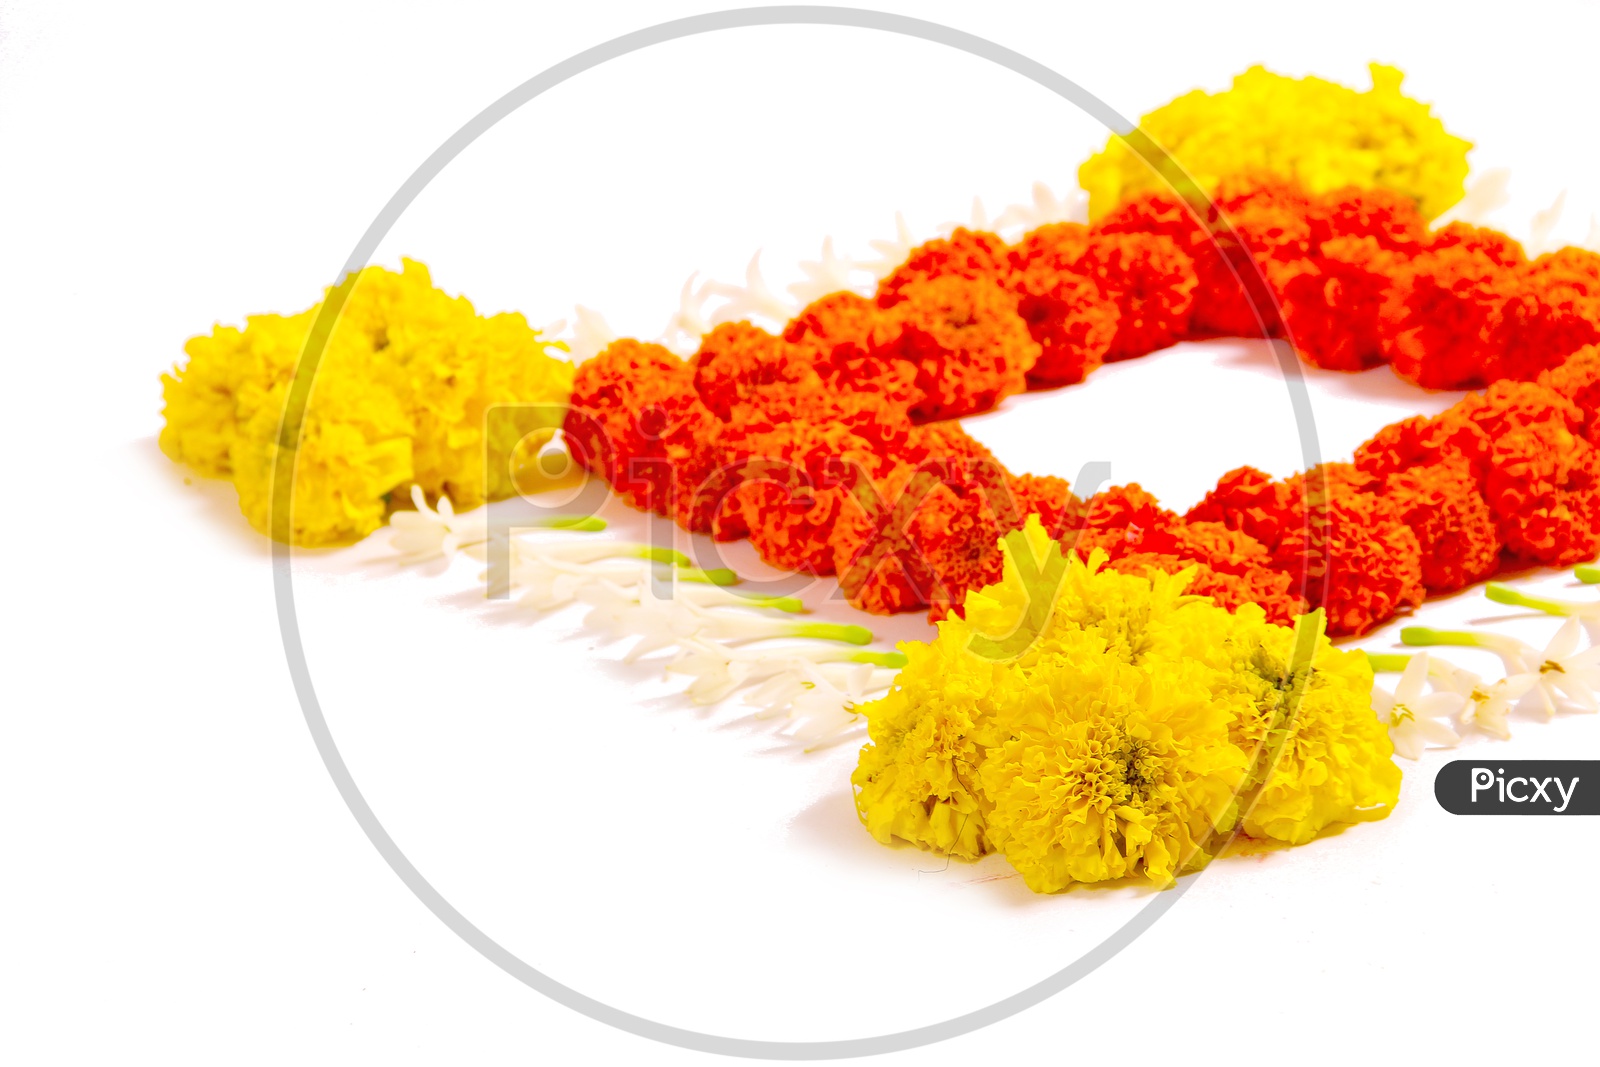 Marigold Flower Rangoli Design for Diwali Festival